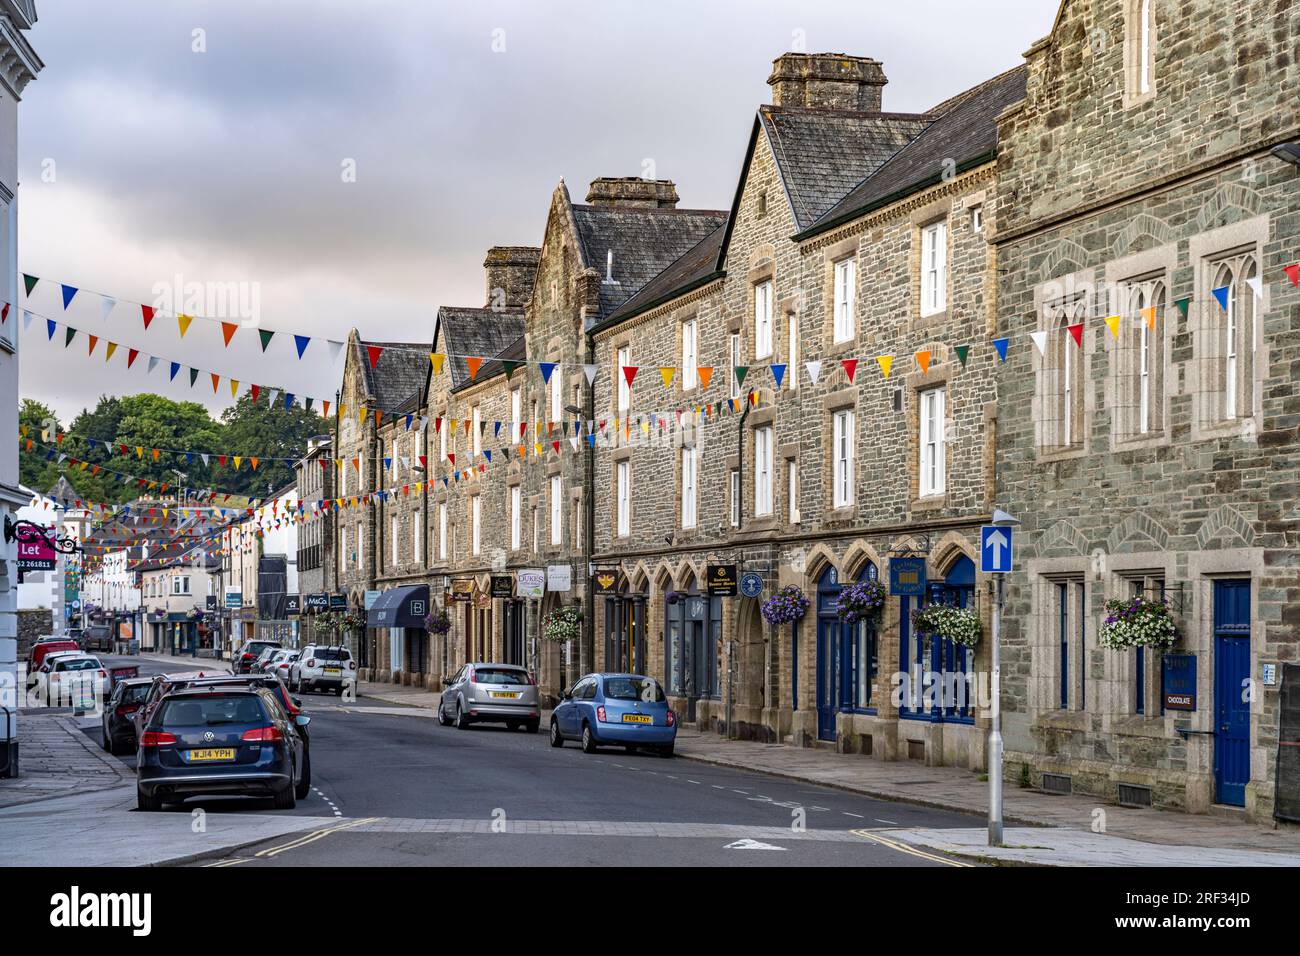 Die Innenstadt  von Tavistock, Devon, England, Großbritannien, Europa  |  Central Tavistock, Devon, England, United Kingdom of Great Britain, Europe Stock Photo